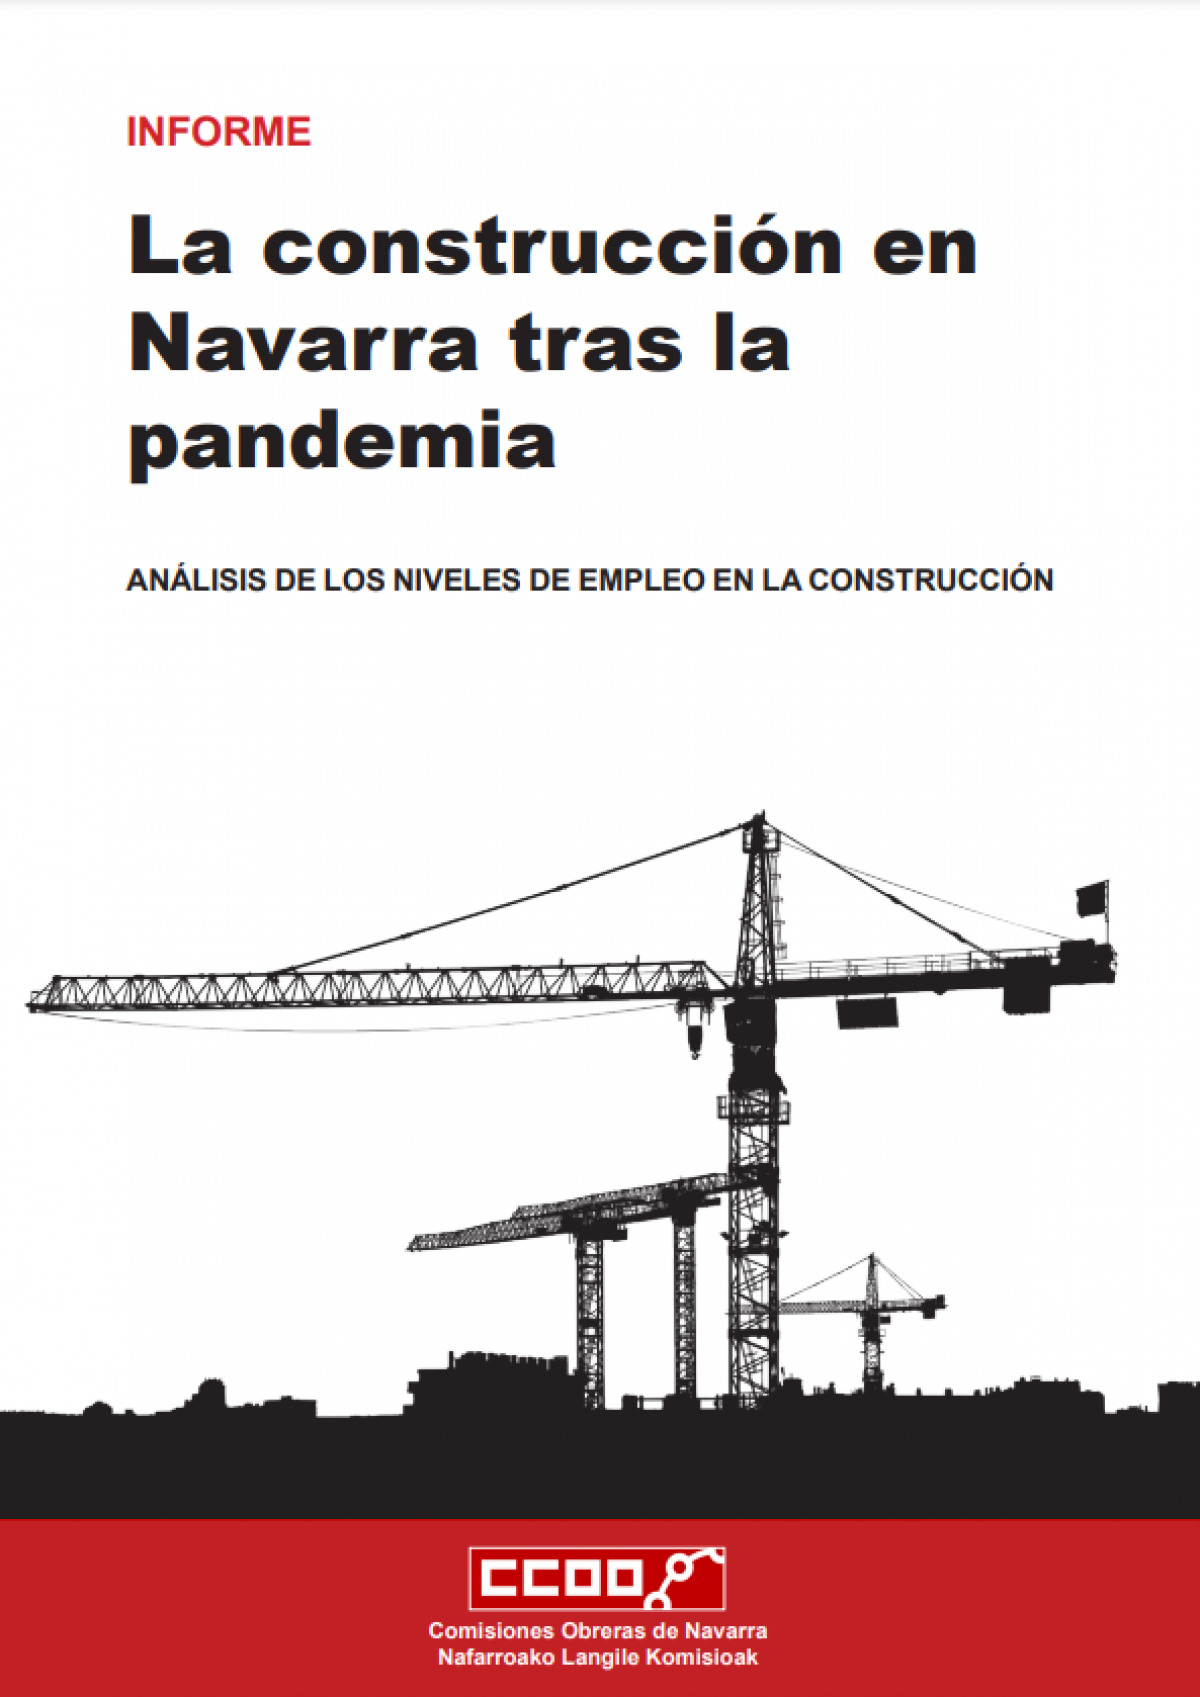 La construcción en Navarra tras la pandemia.